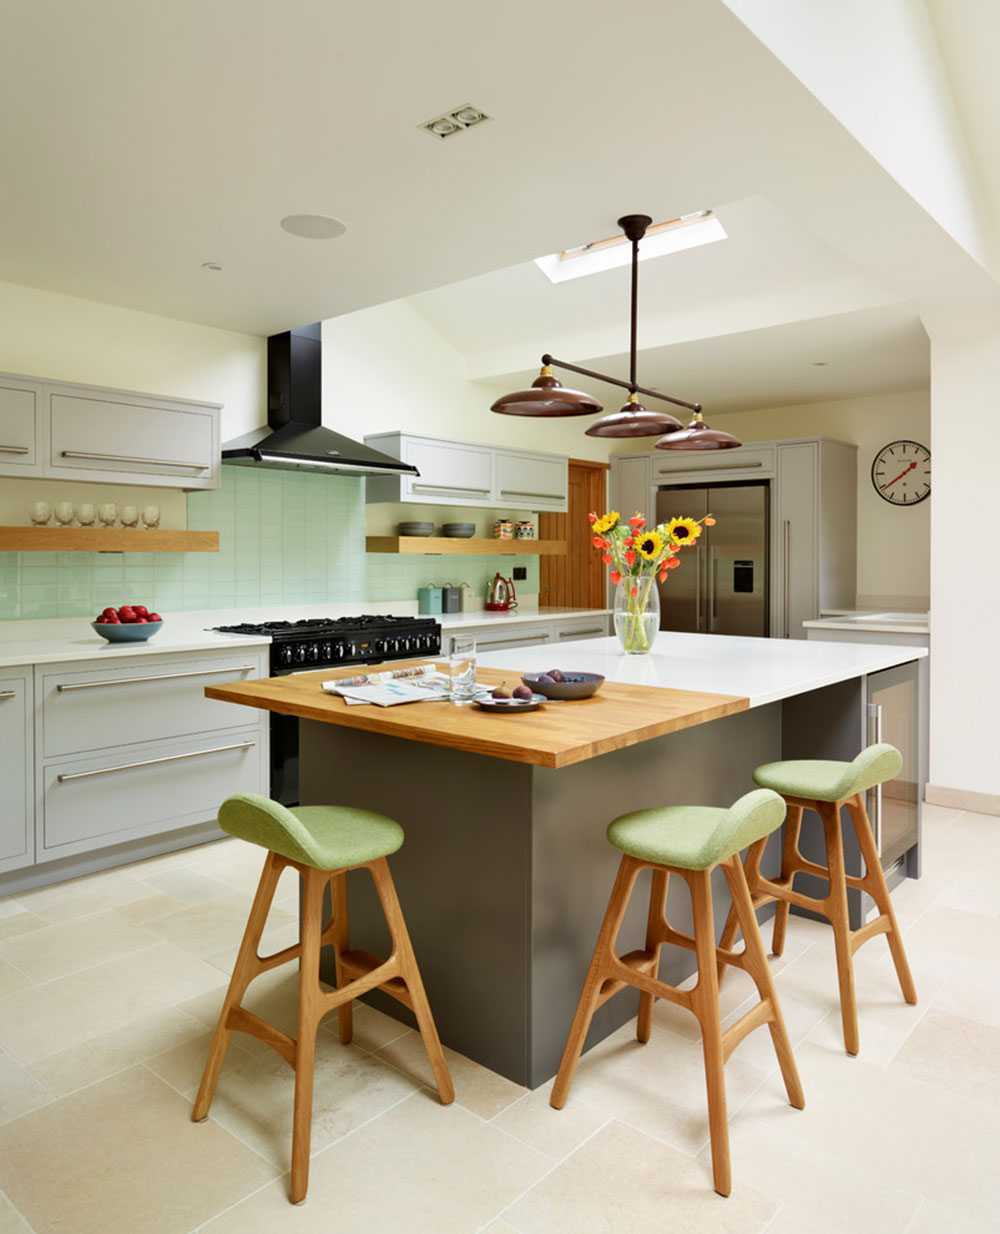 kitchen design with island